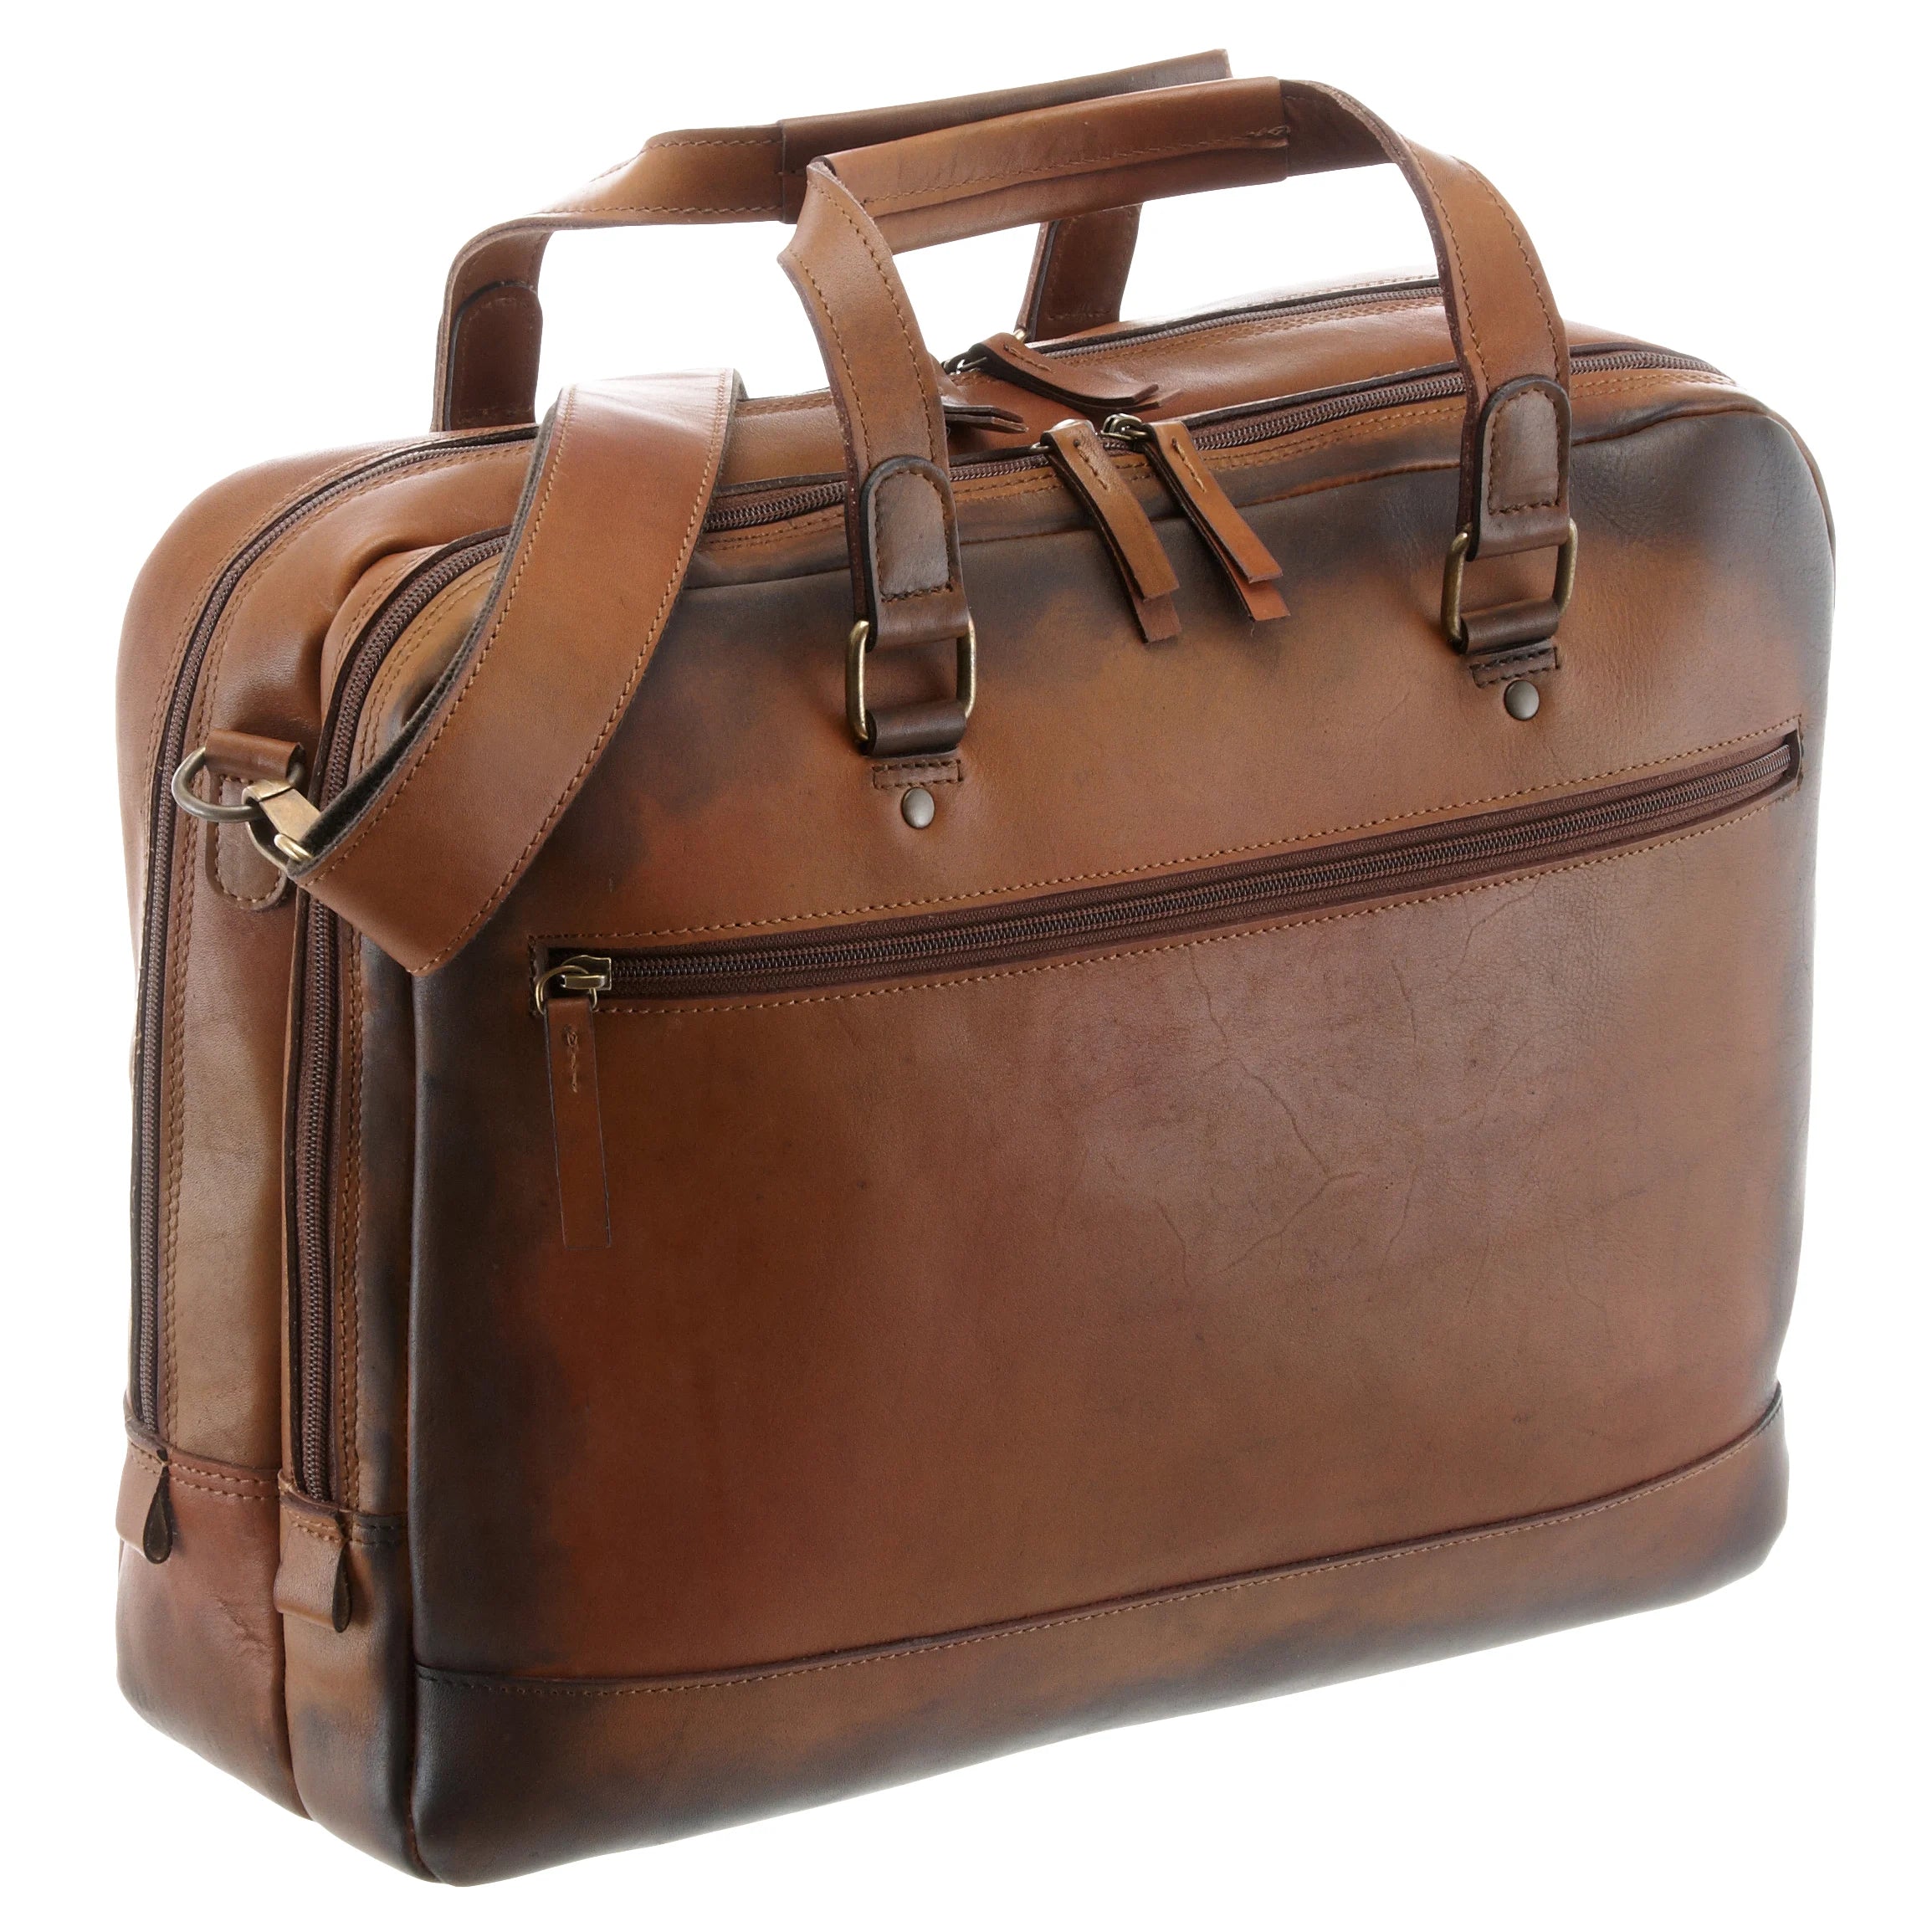 Jost Randers RV briefcase 40 cm - cognac